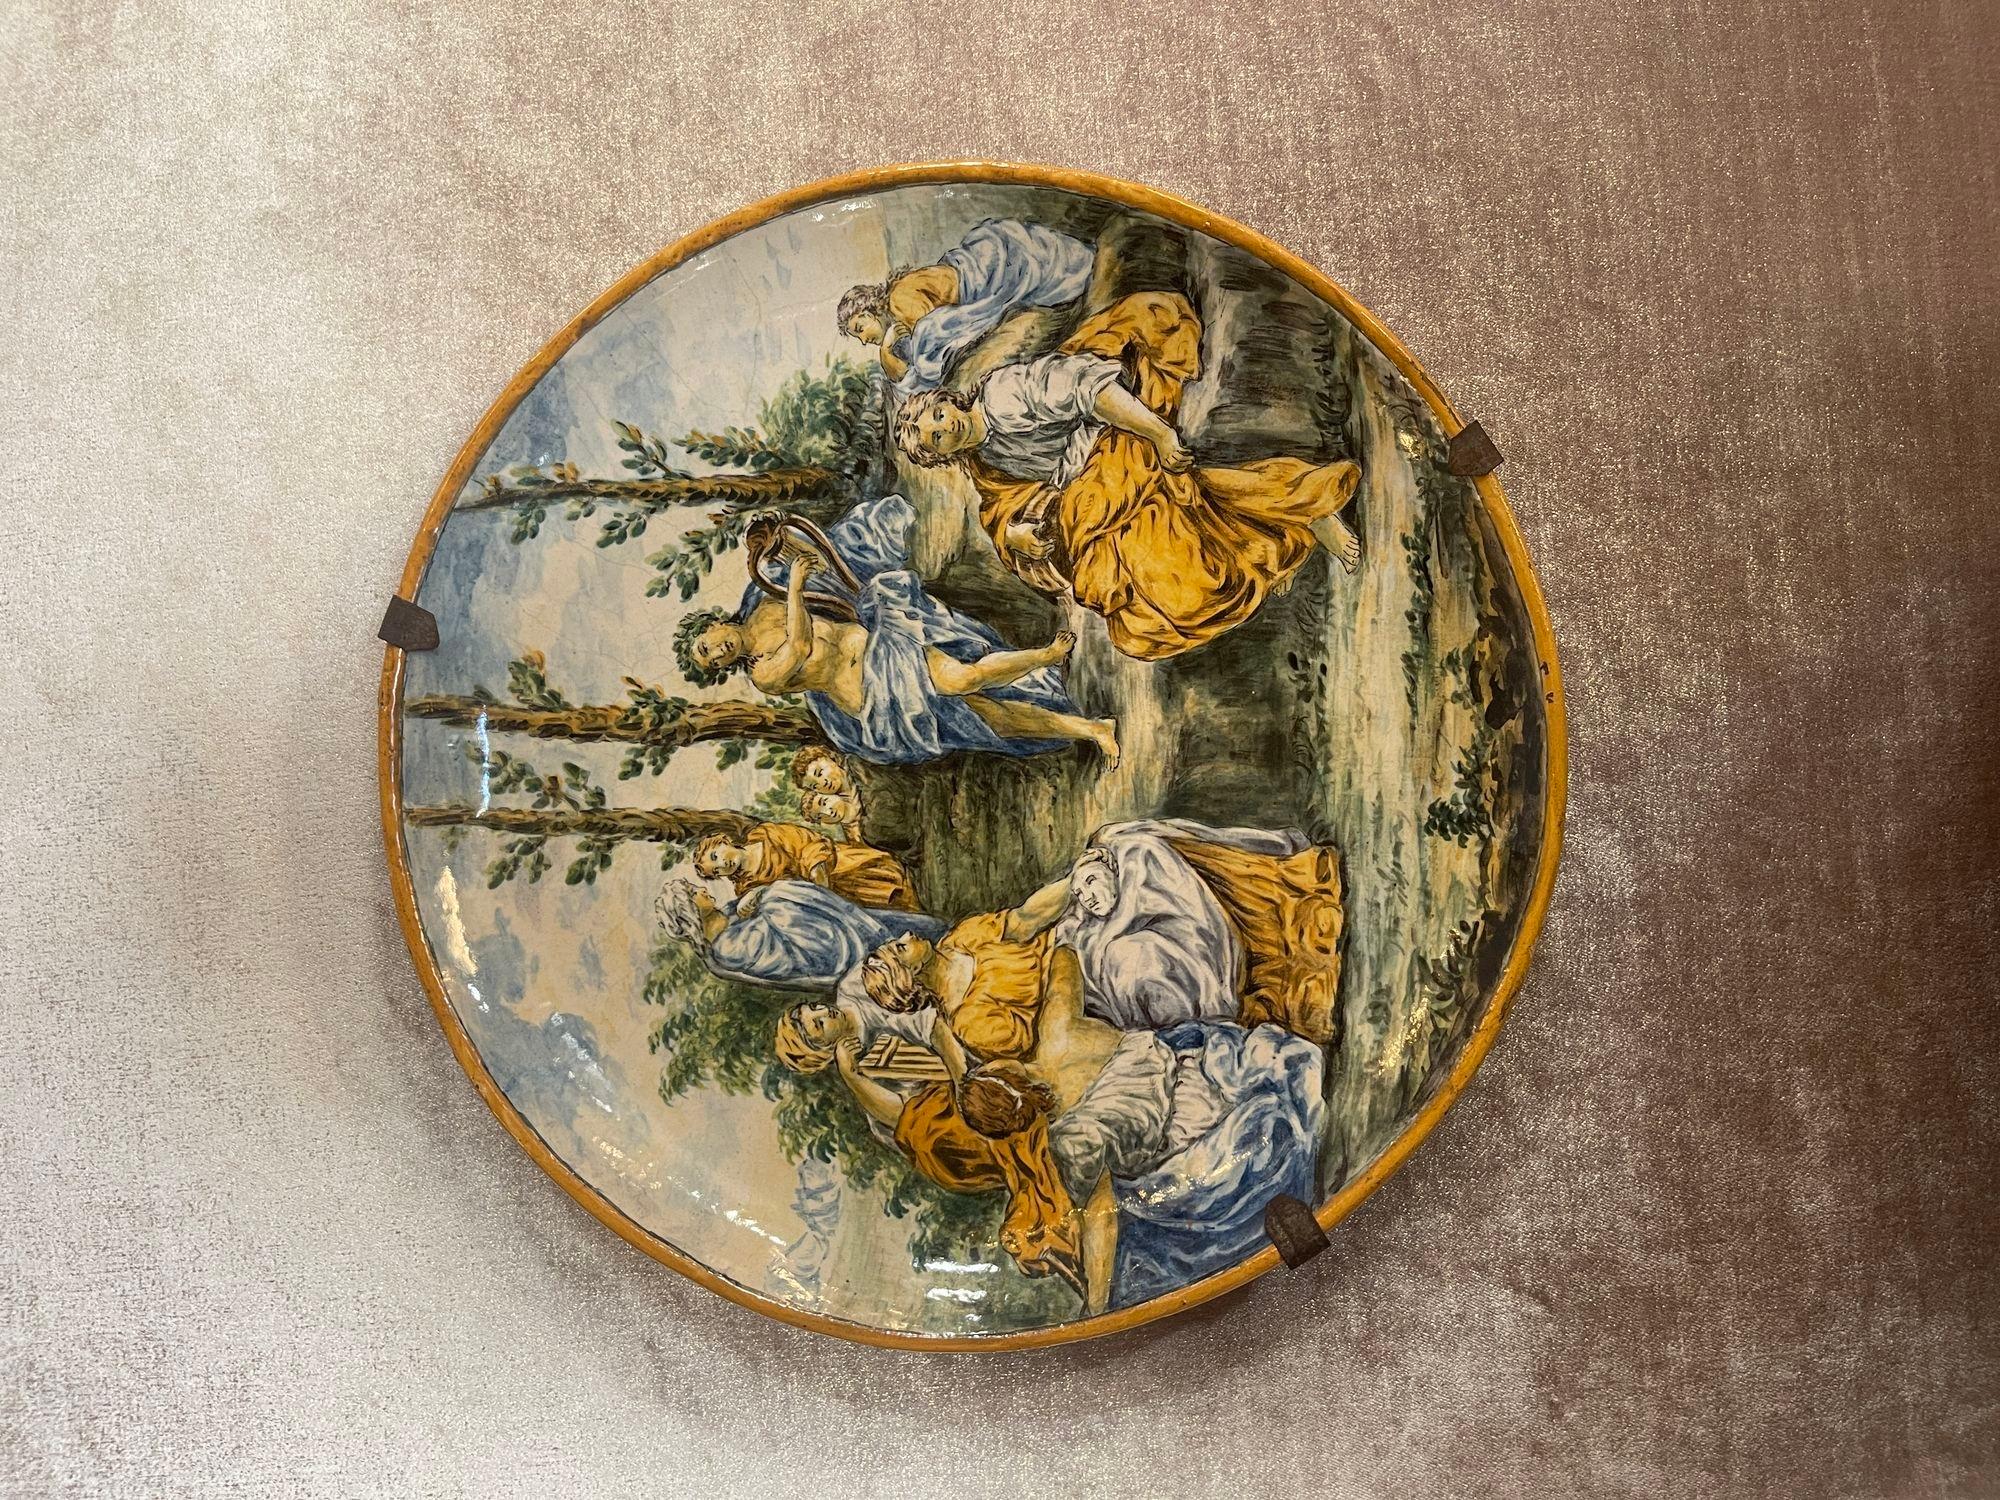 Chargeur en majolique italienne du 19e siècle avec des paysages peints à la main dans les moindres détails.
Dimensions :
2 